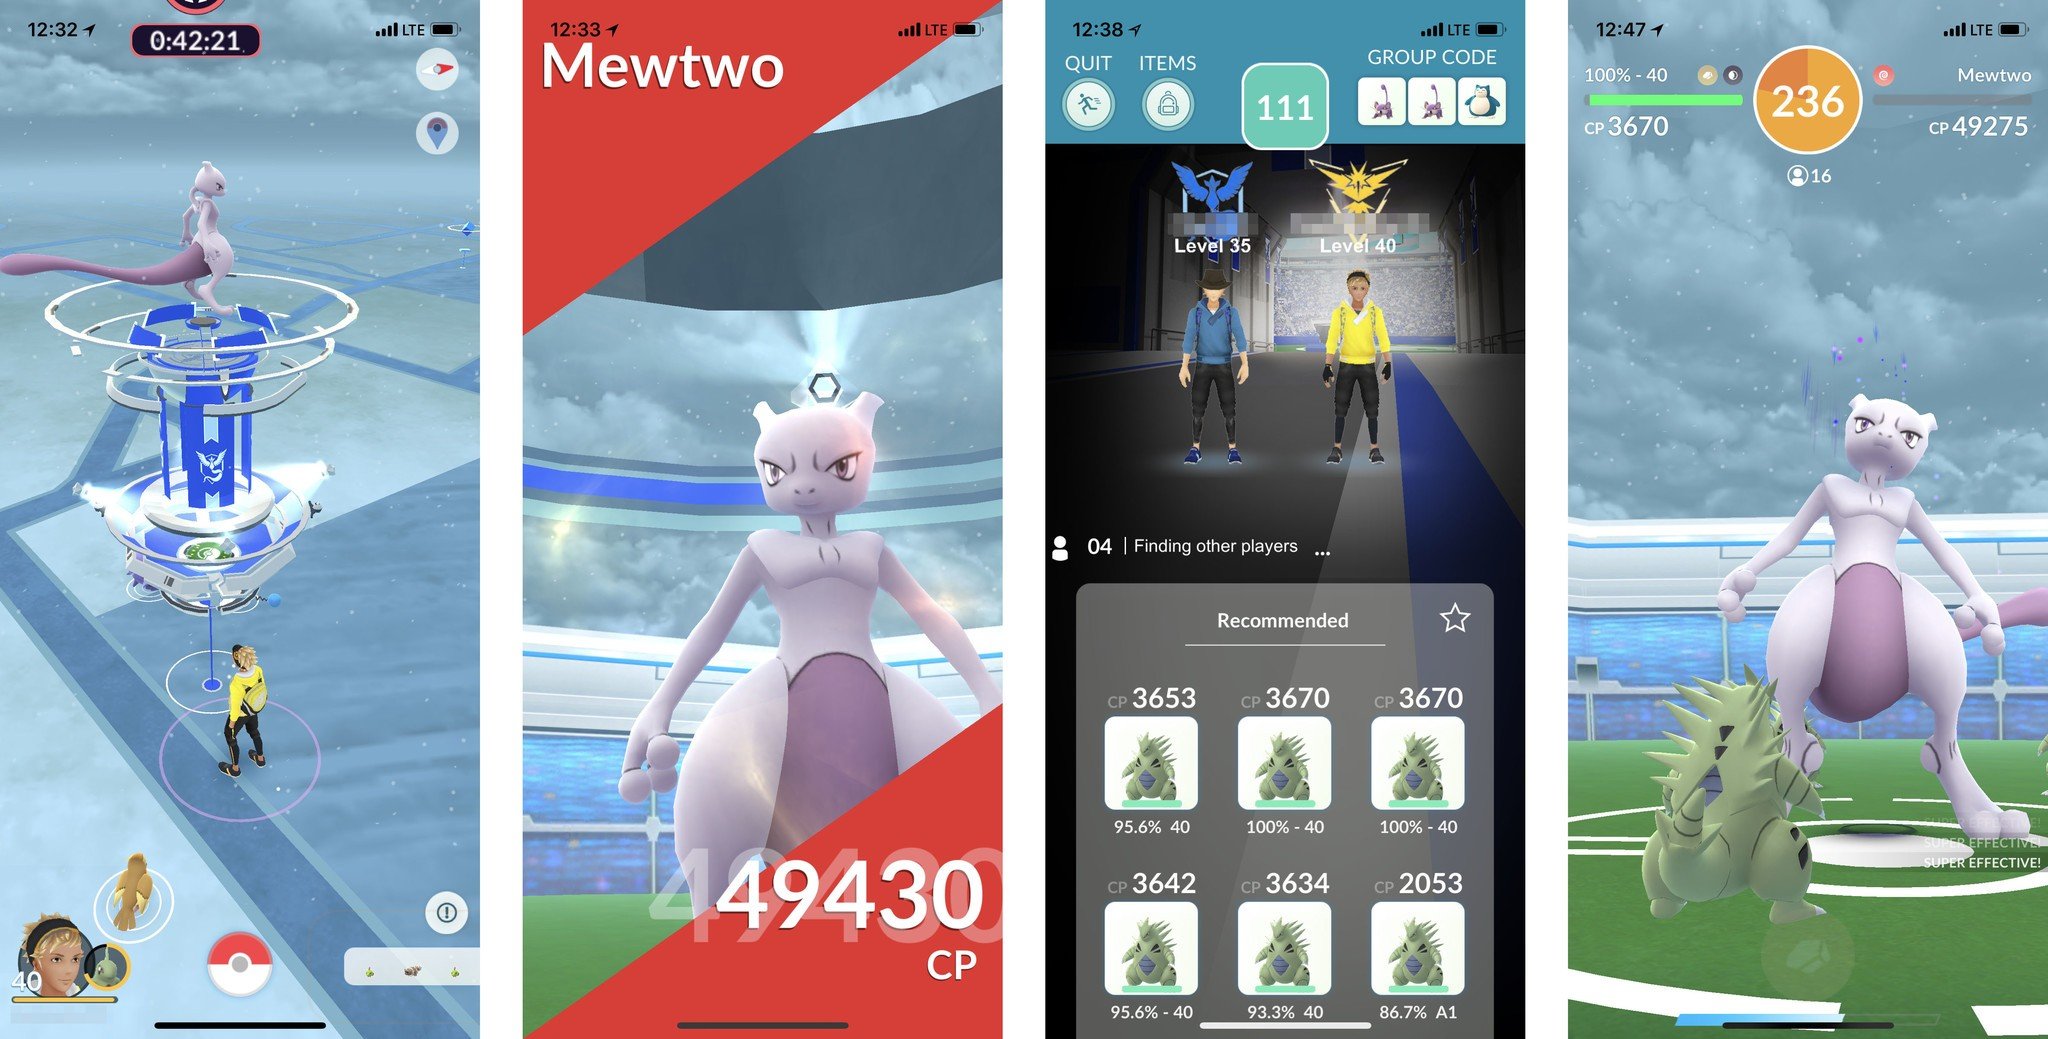 Pokémon Go Mewtwo Raid Guide for September 2019 iMore